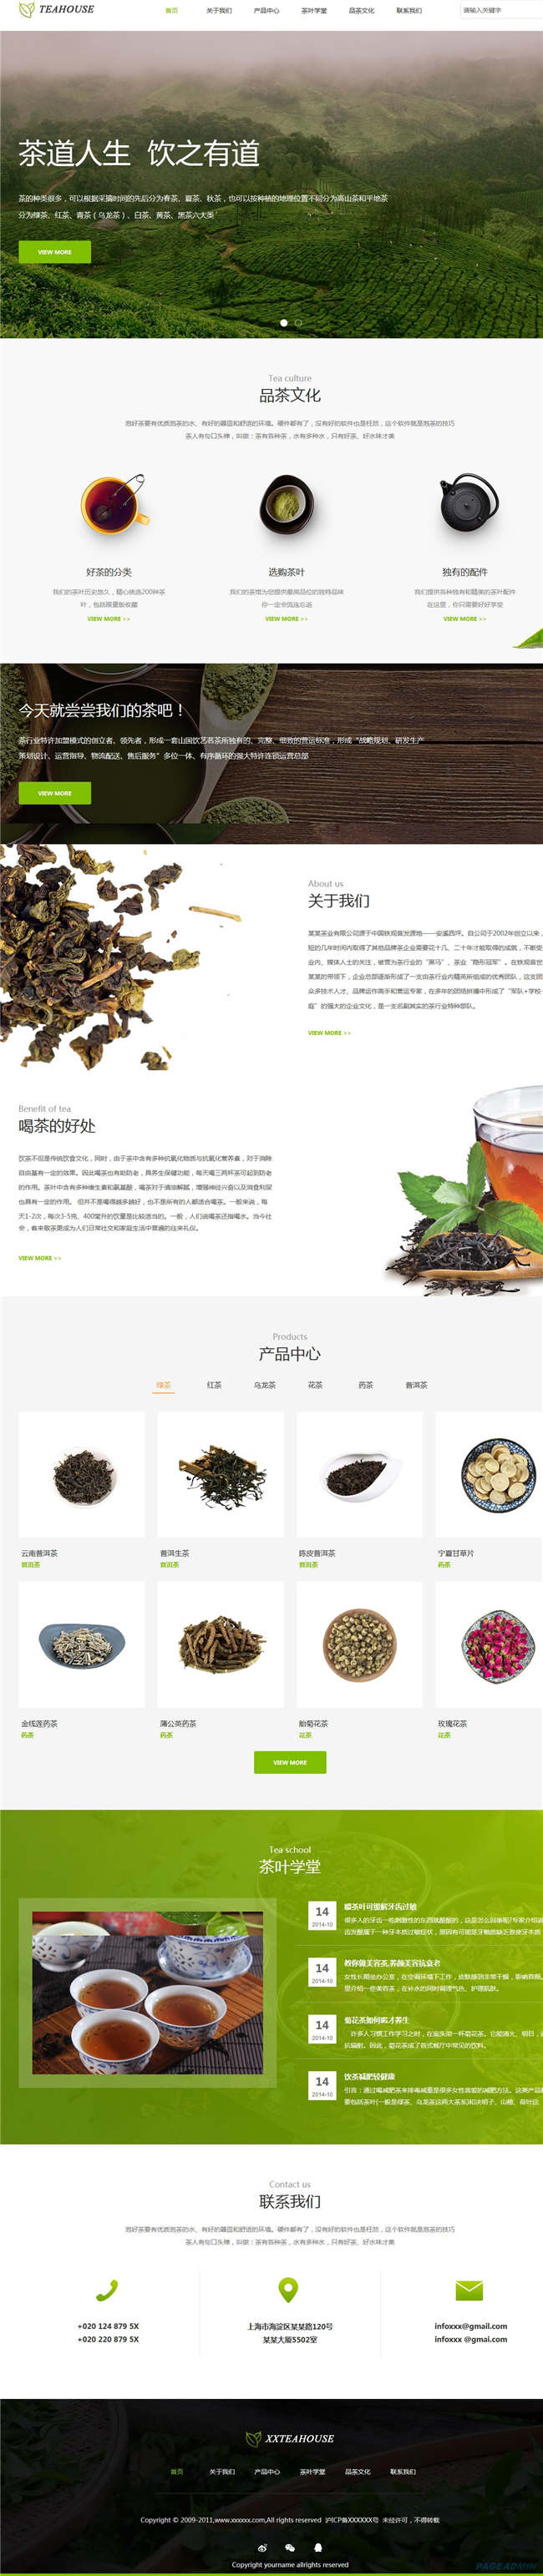 茶叶食品饮料生鲜茶酒网站Wordpress模板(带手机站)预览图